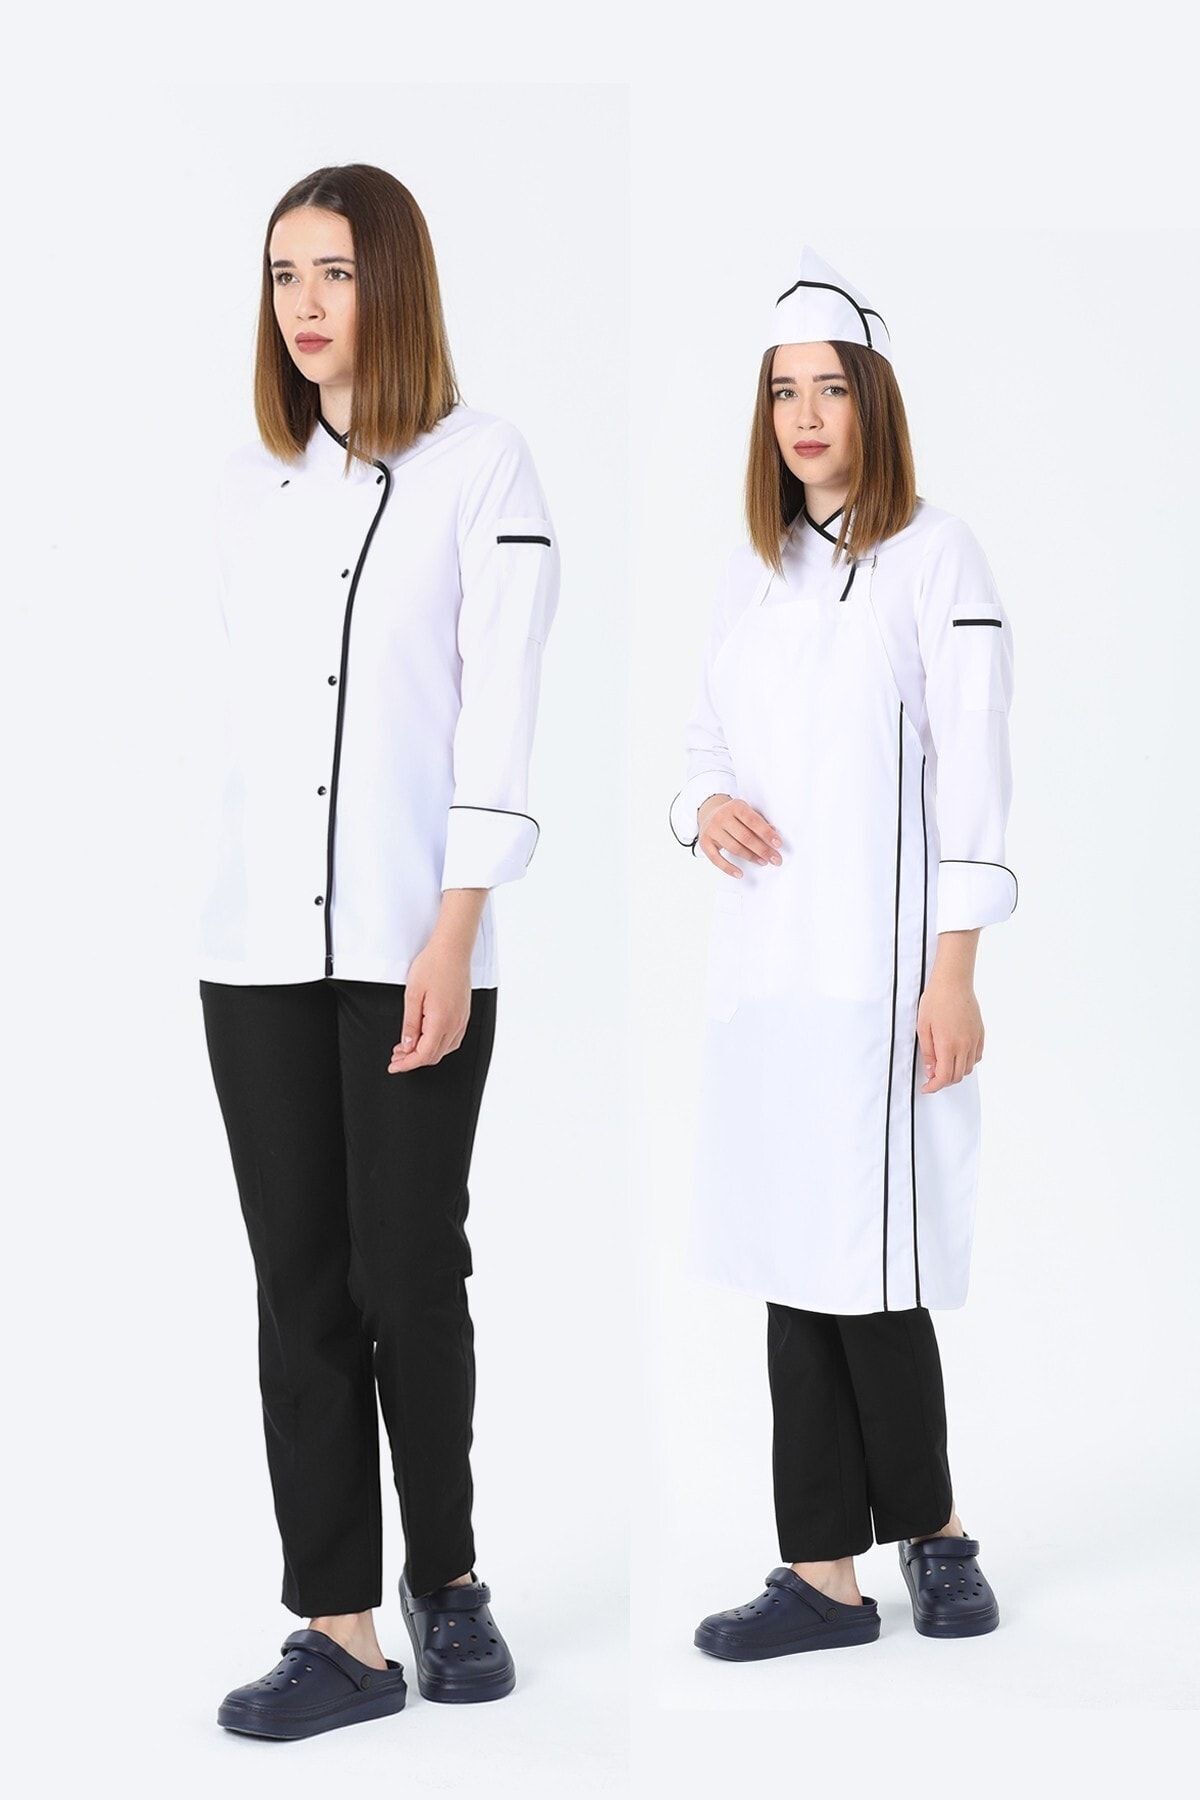 TIPTEKS Kadın Uzun Kol Siyah - Beyaz Aşçı Ceket + Aşçı Pantolon + Askılı Önlük Ve Kep Dörtlü Takım